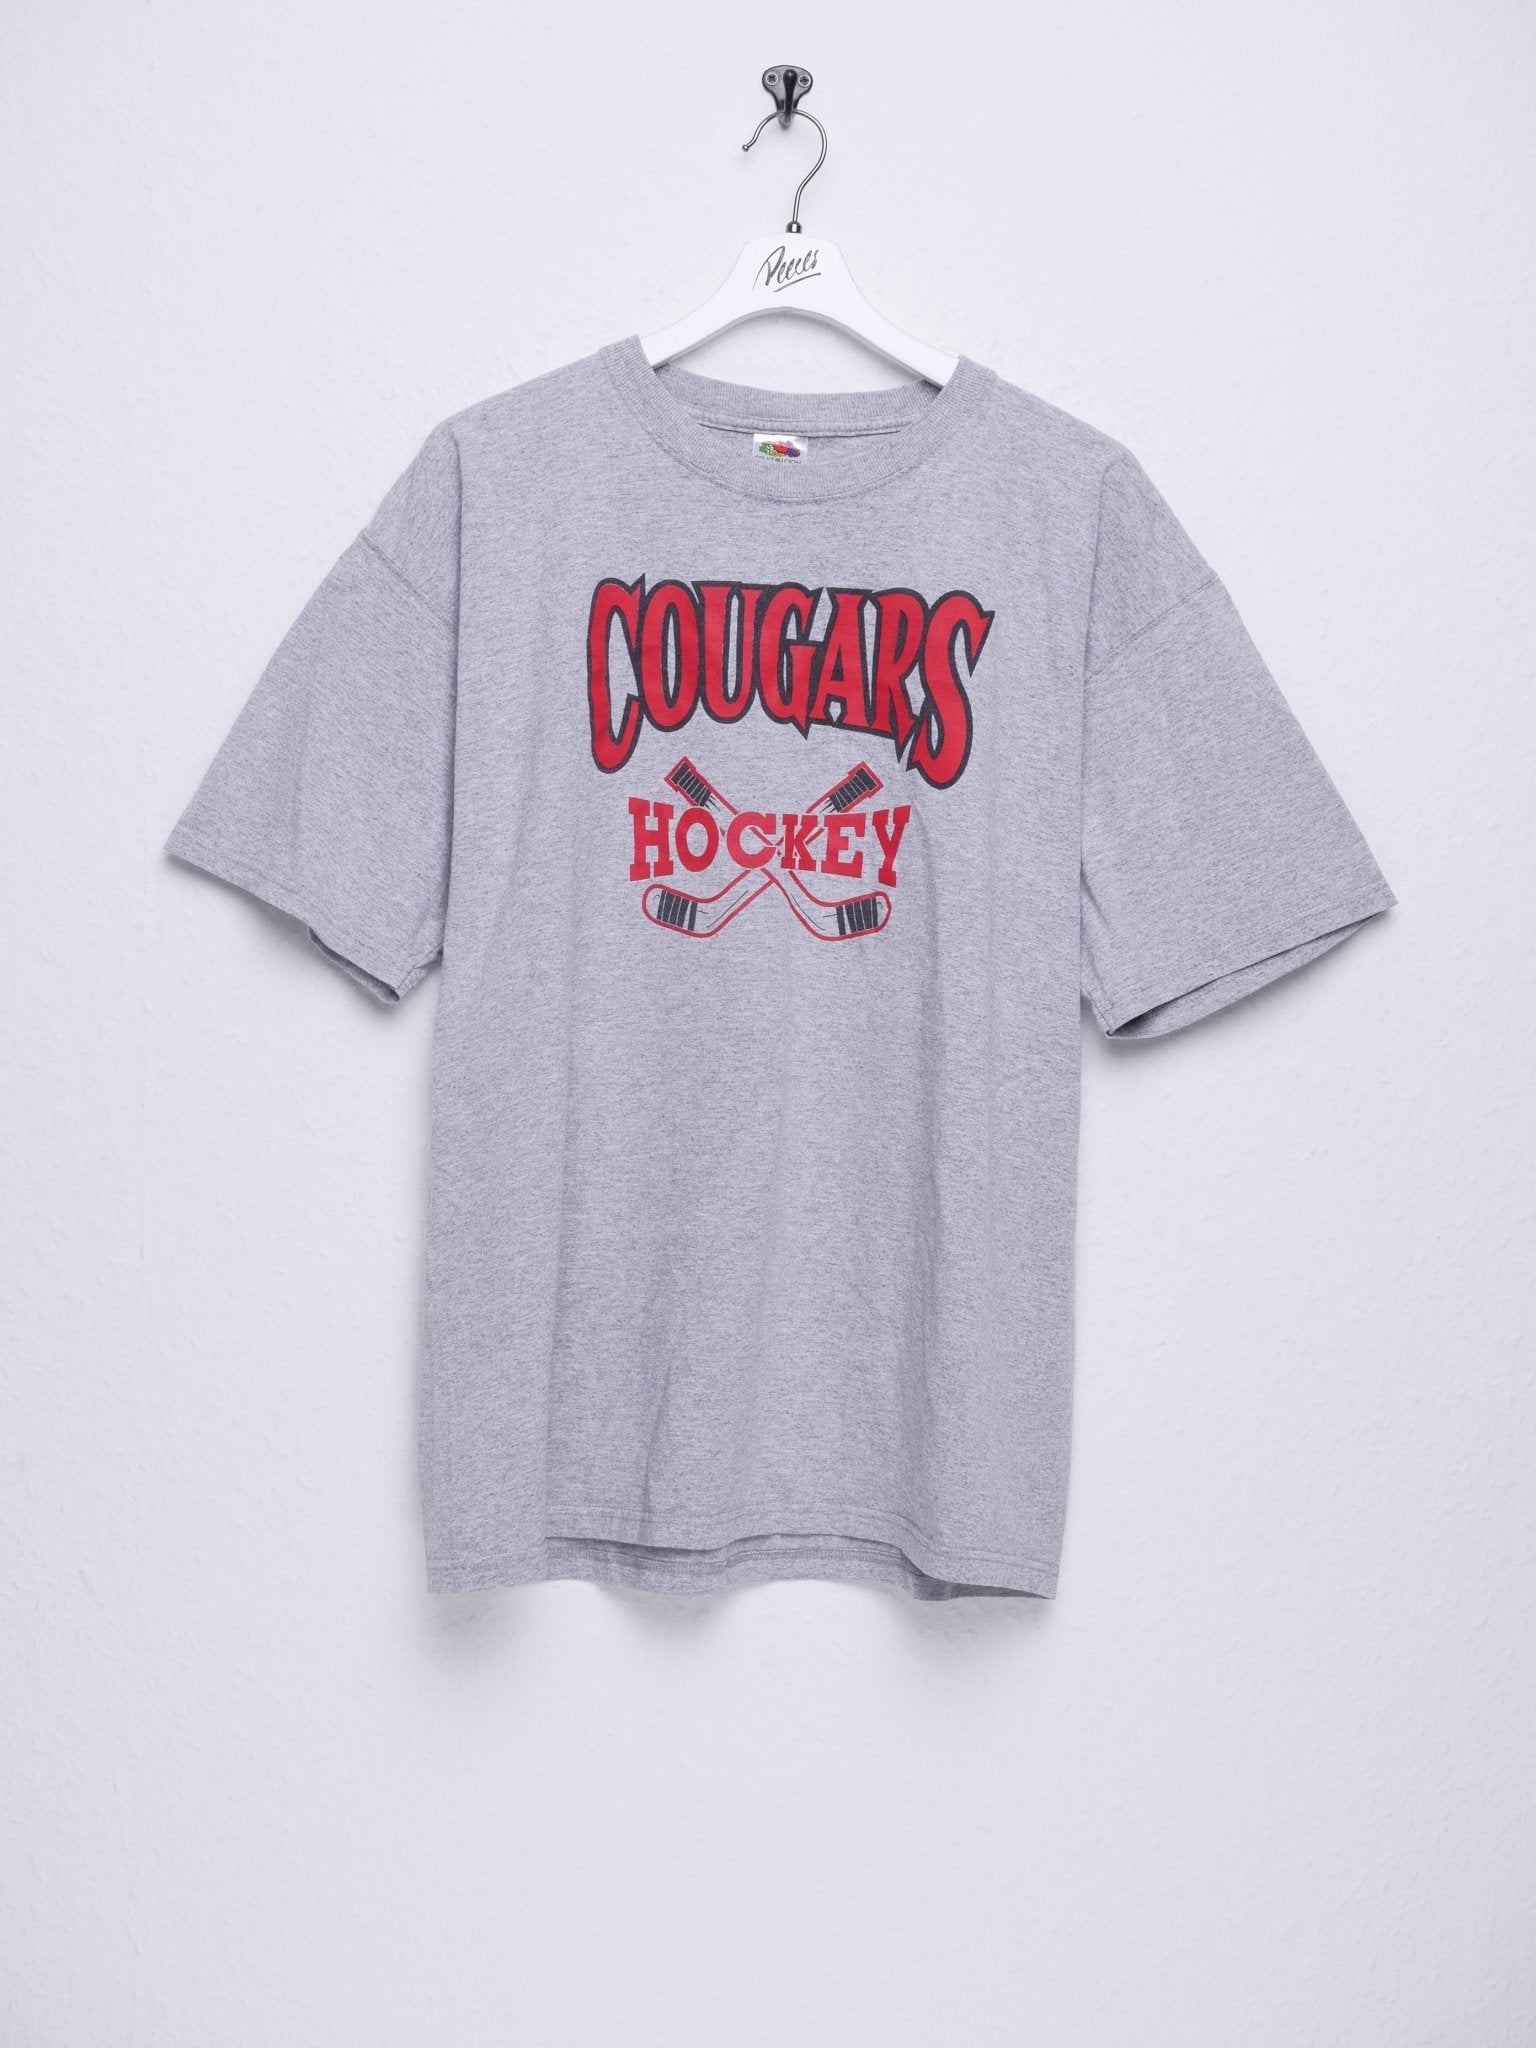 Cougars Hockey printed Logo Shirt - Peeces